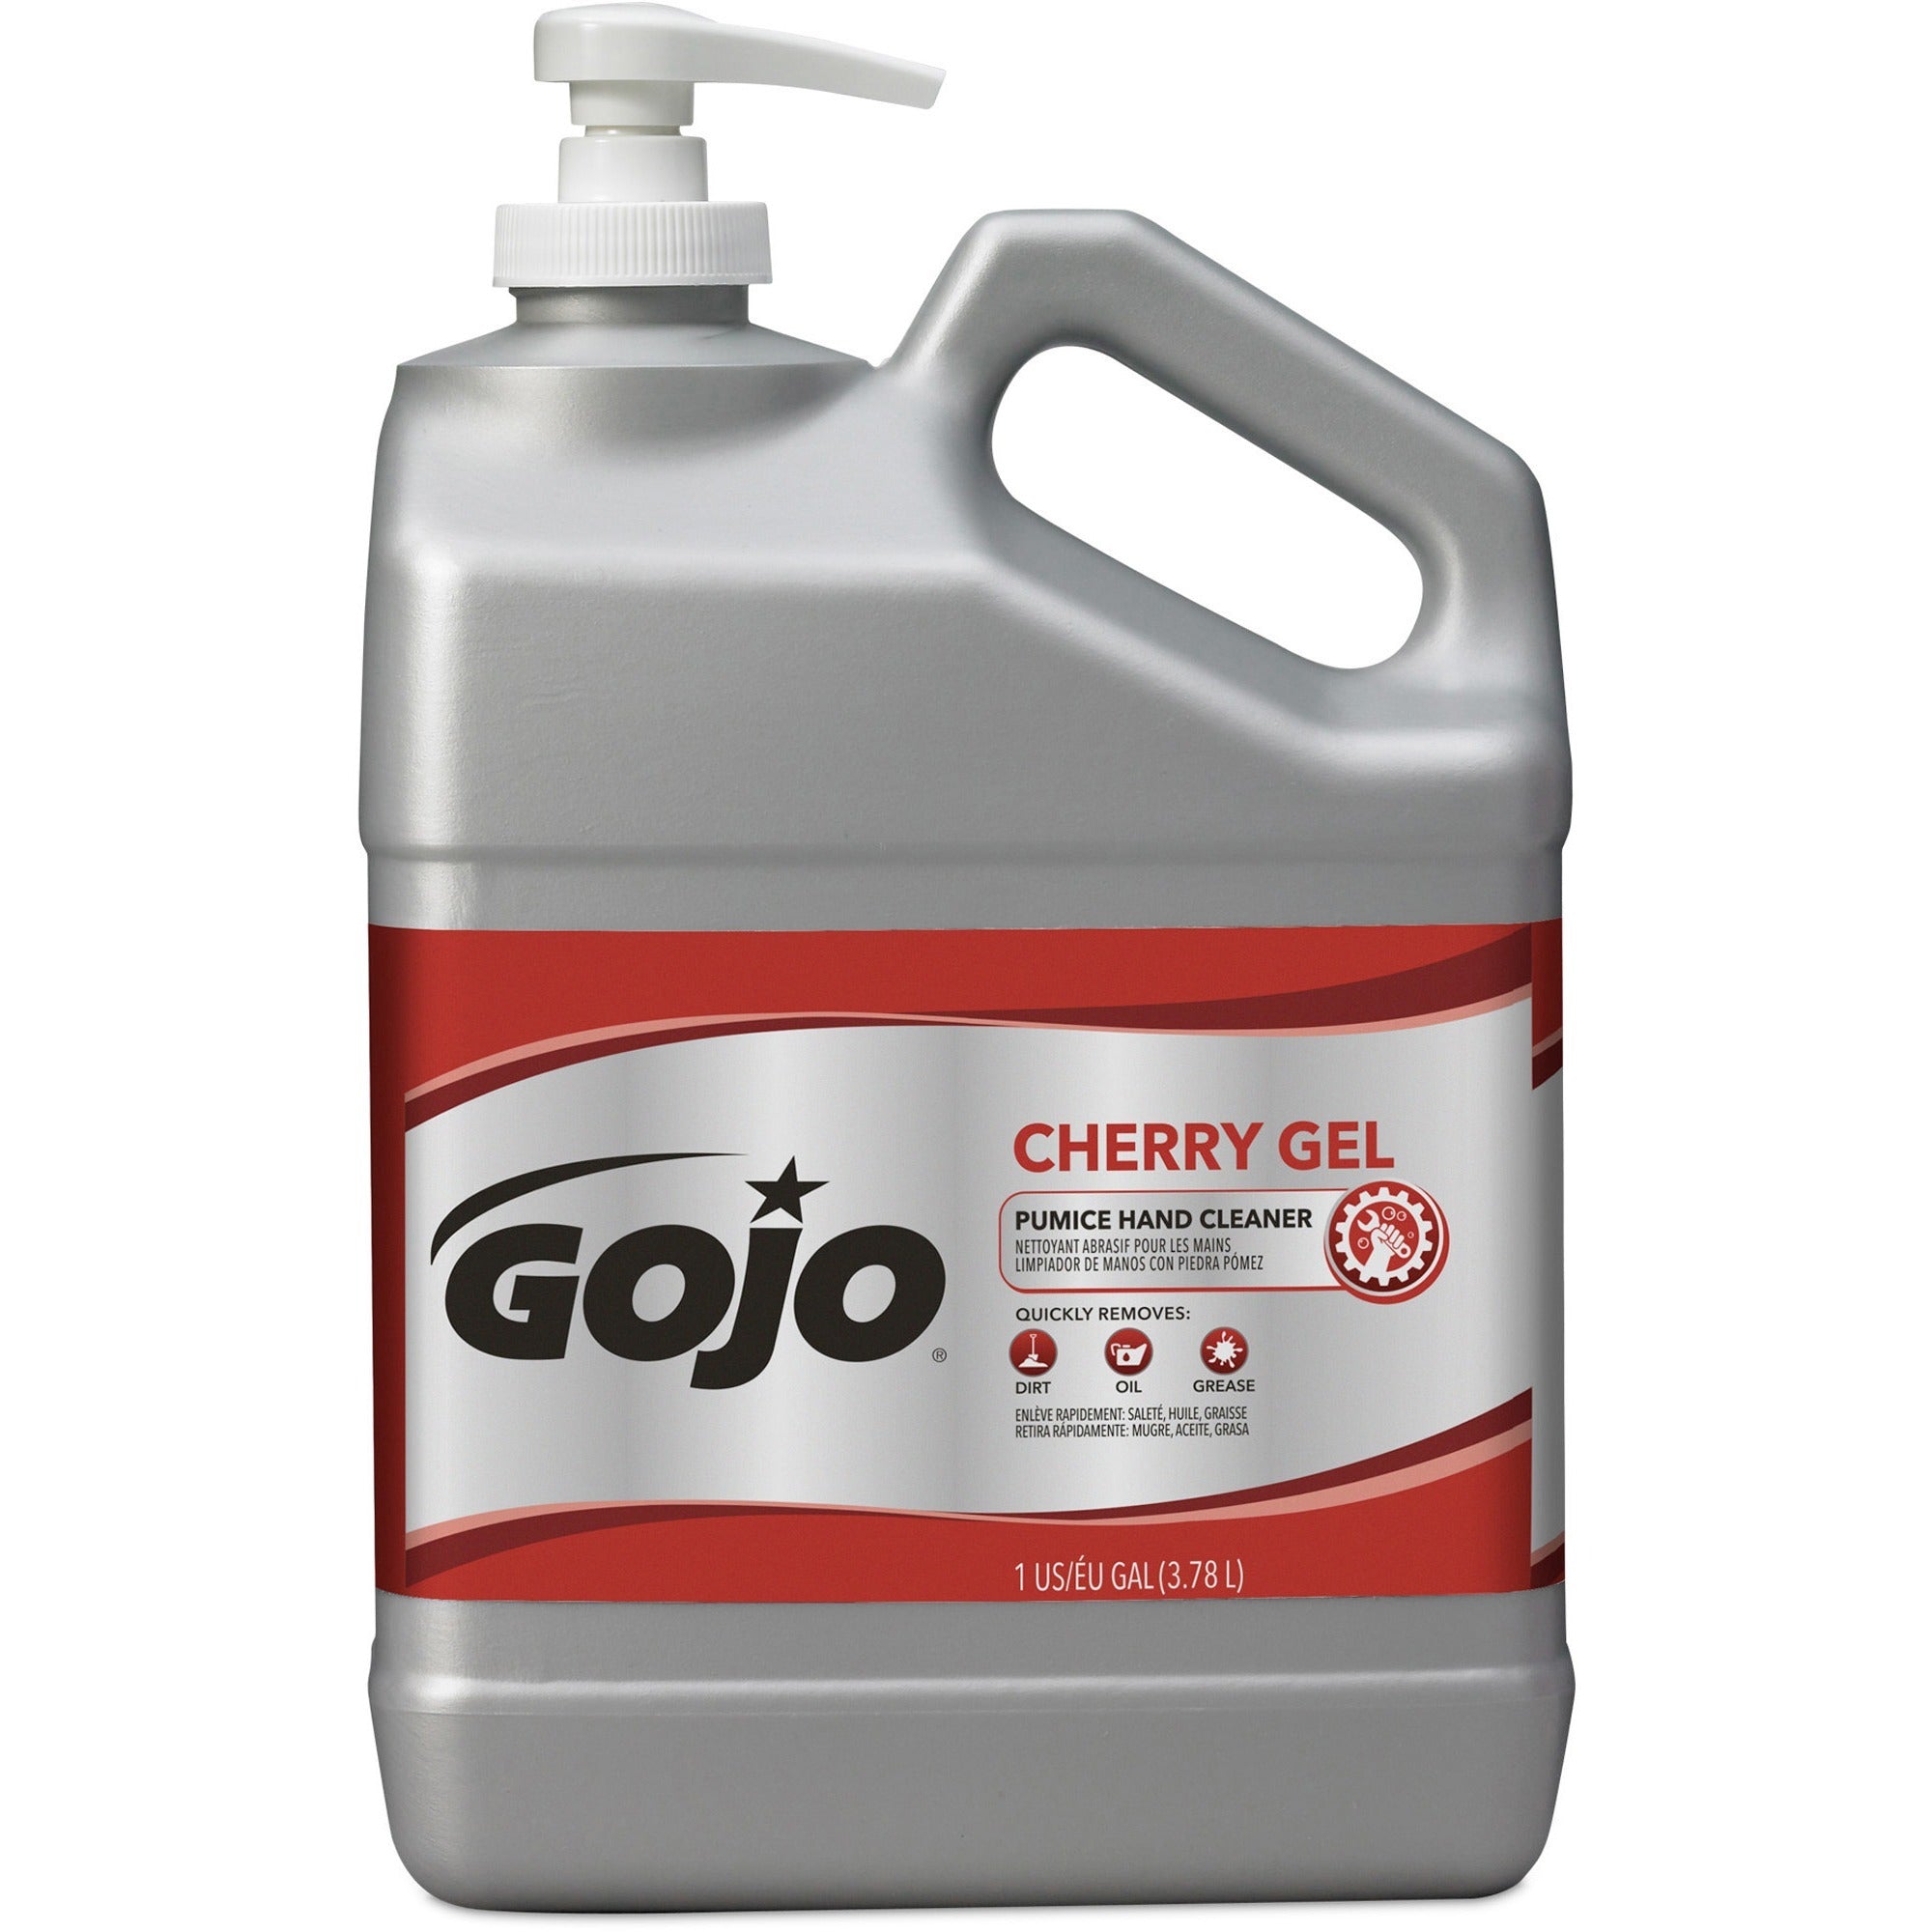 gojo-cherry-gel-pumice-hand-cleaner-cherry-scentfor-1-gal-38-l-pump-bottle-dispenser-dirt-remover-oil-remover-grease-remover-paint-remover-tar-remover-hand-skin-heavy-duty-ph-balanced-pleasant-scent-2-carton_goj235802ct - 2